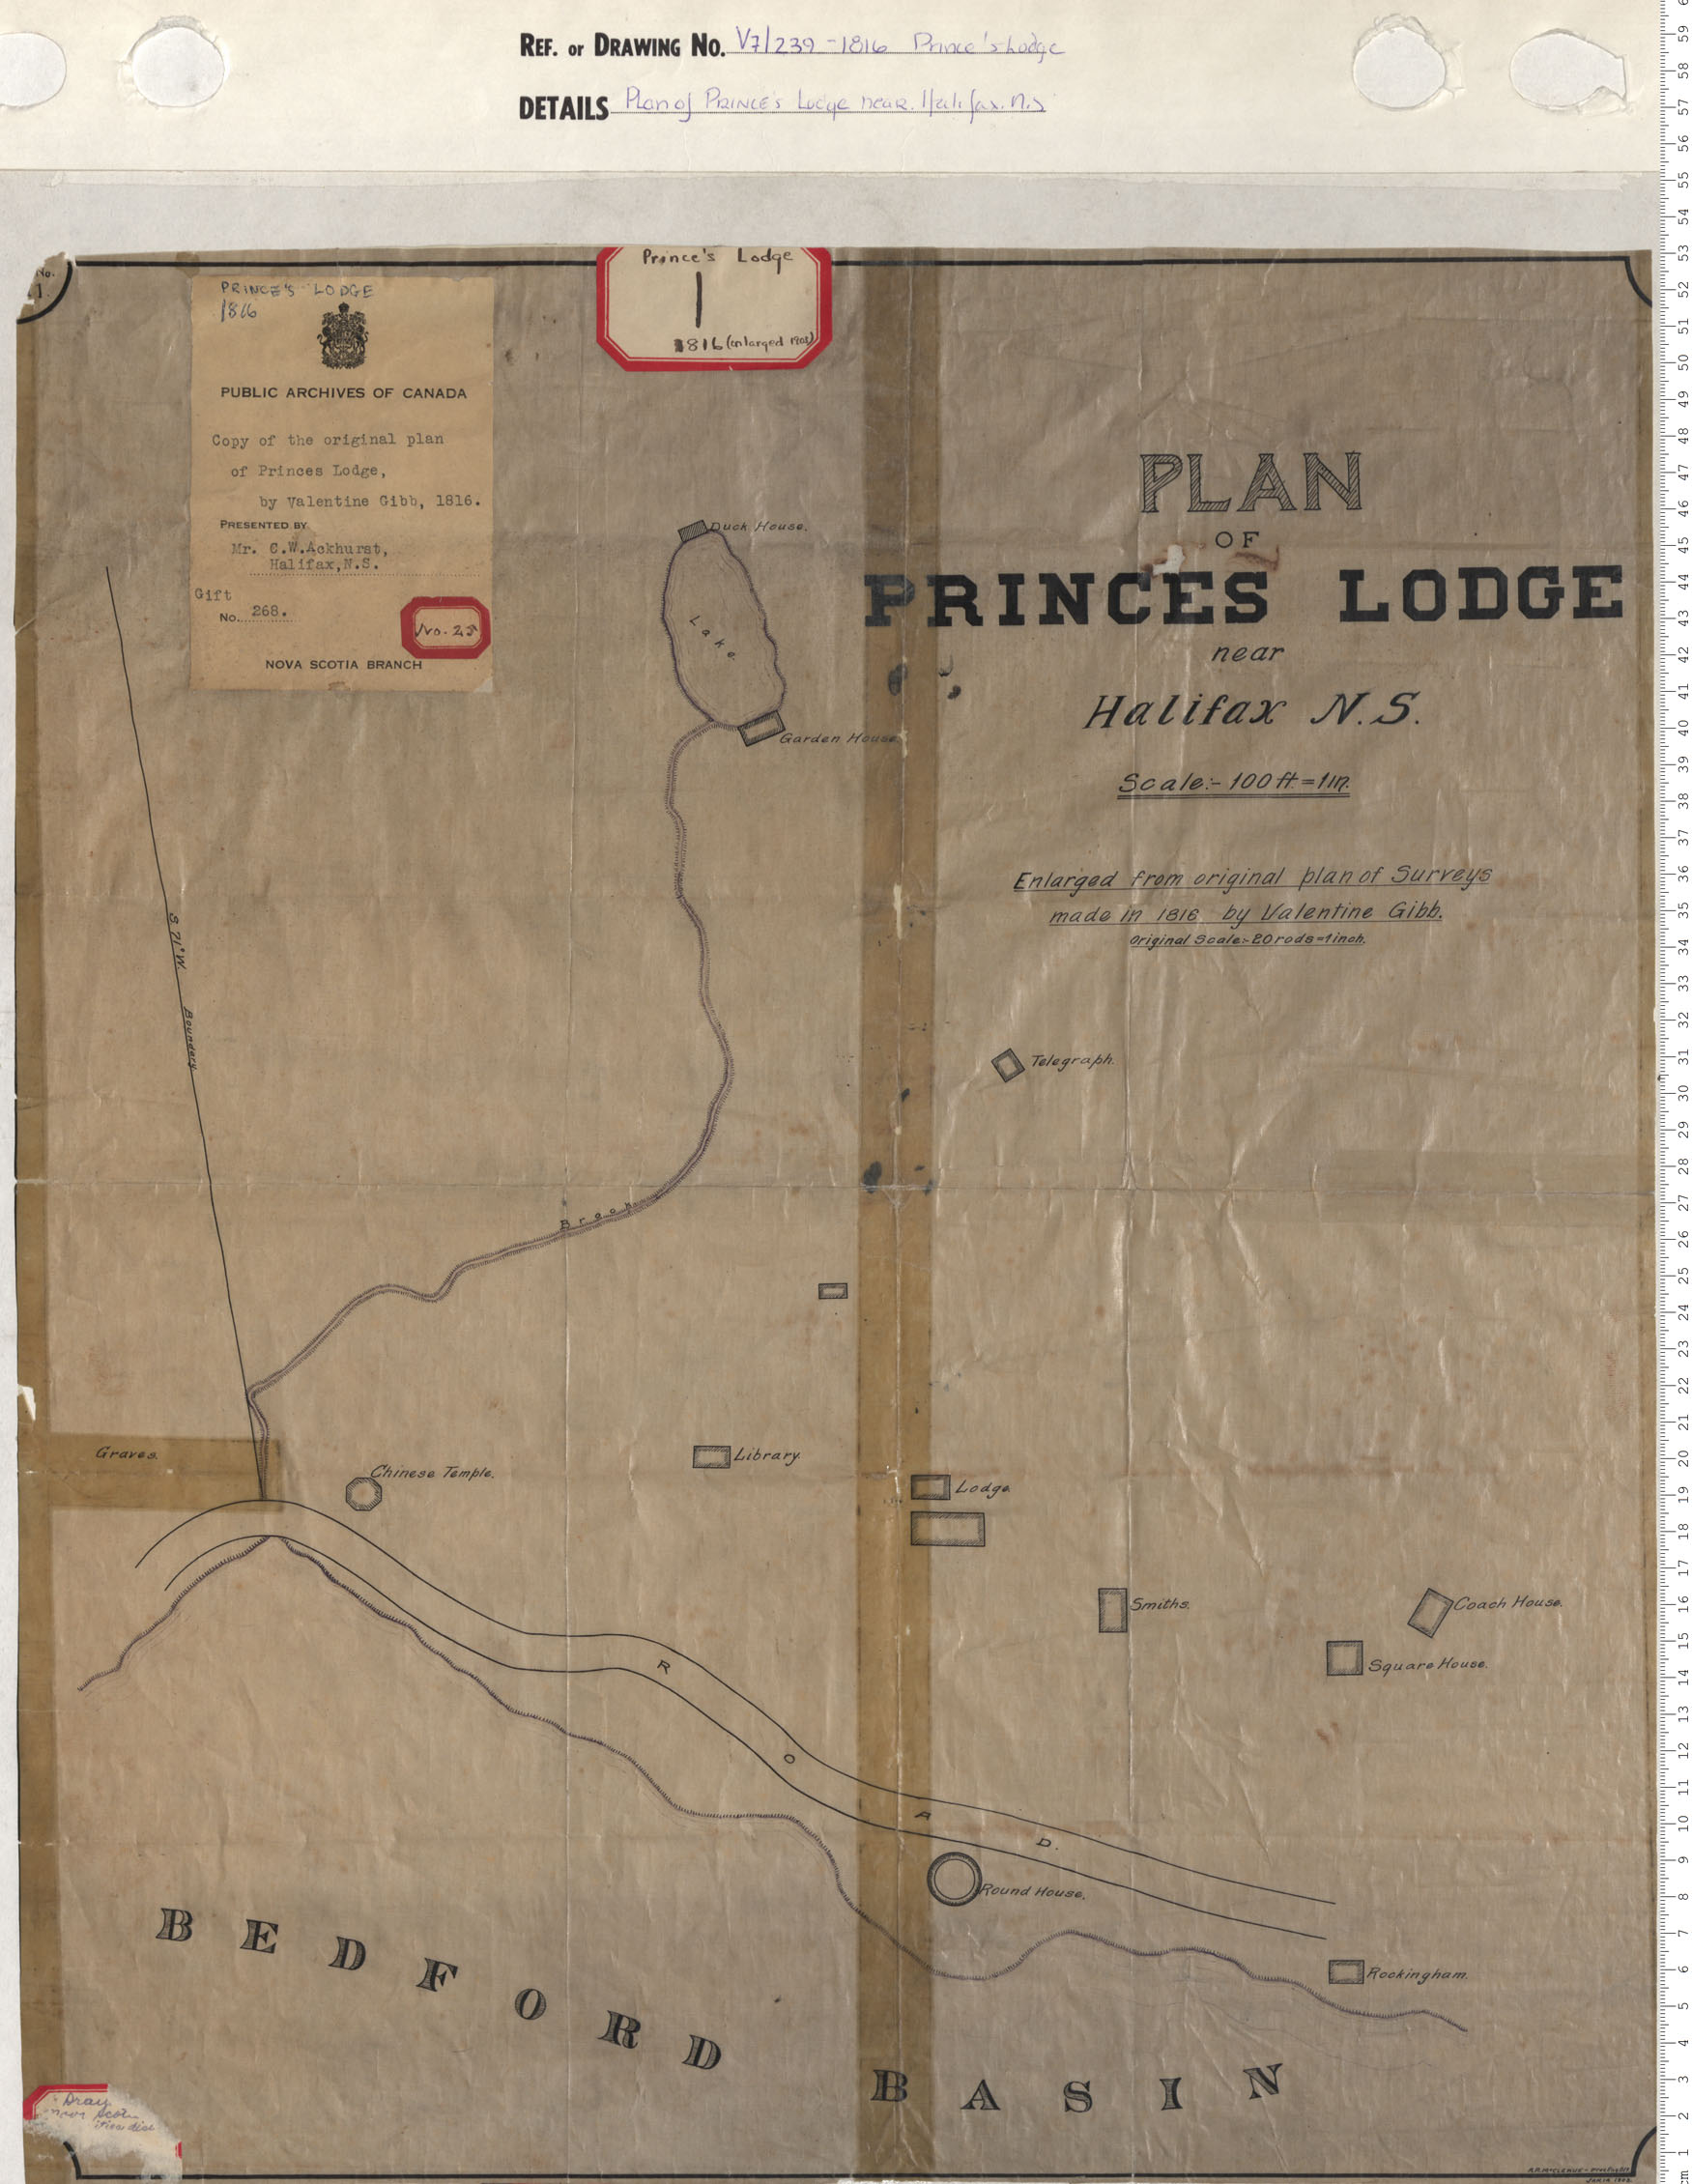 Plan of Prince's Lodge near Halifax N.S.